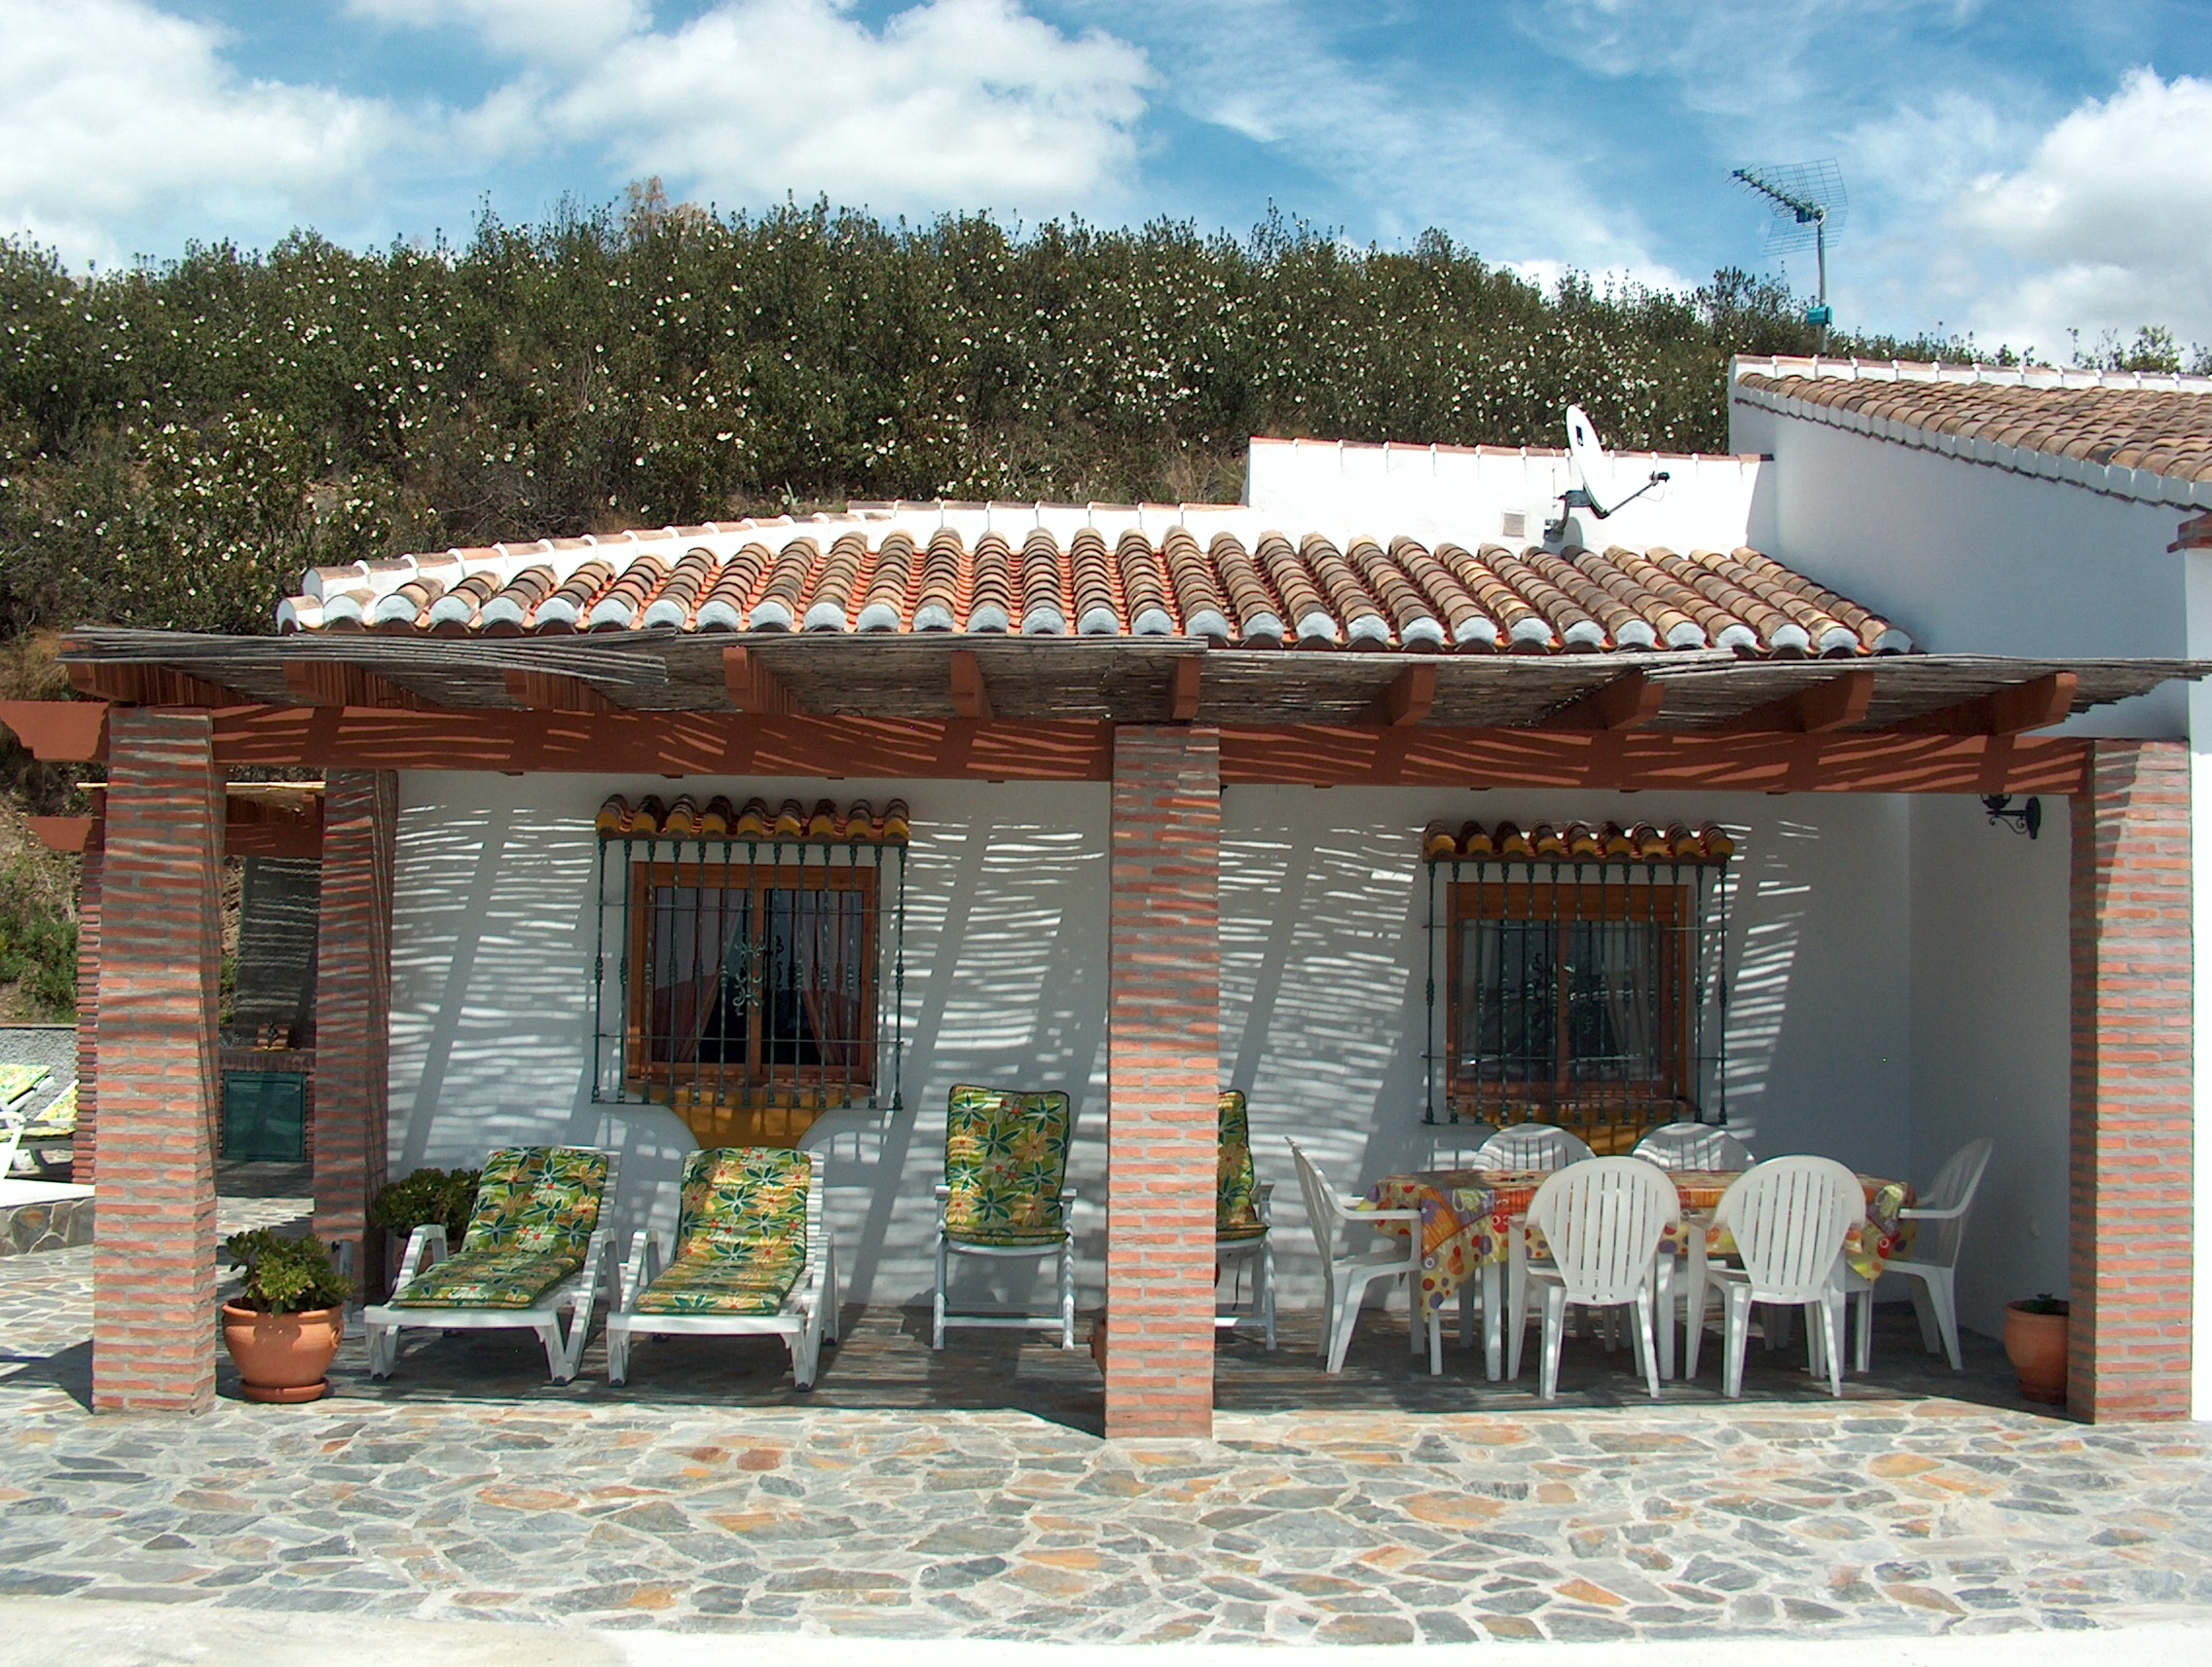 Idyllische und schöne kleine Landhaus in den Bergen mit einer unglaublichen Aussicht über die Axarquía